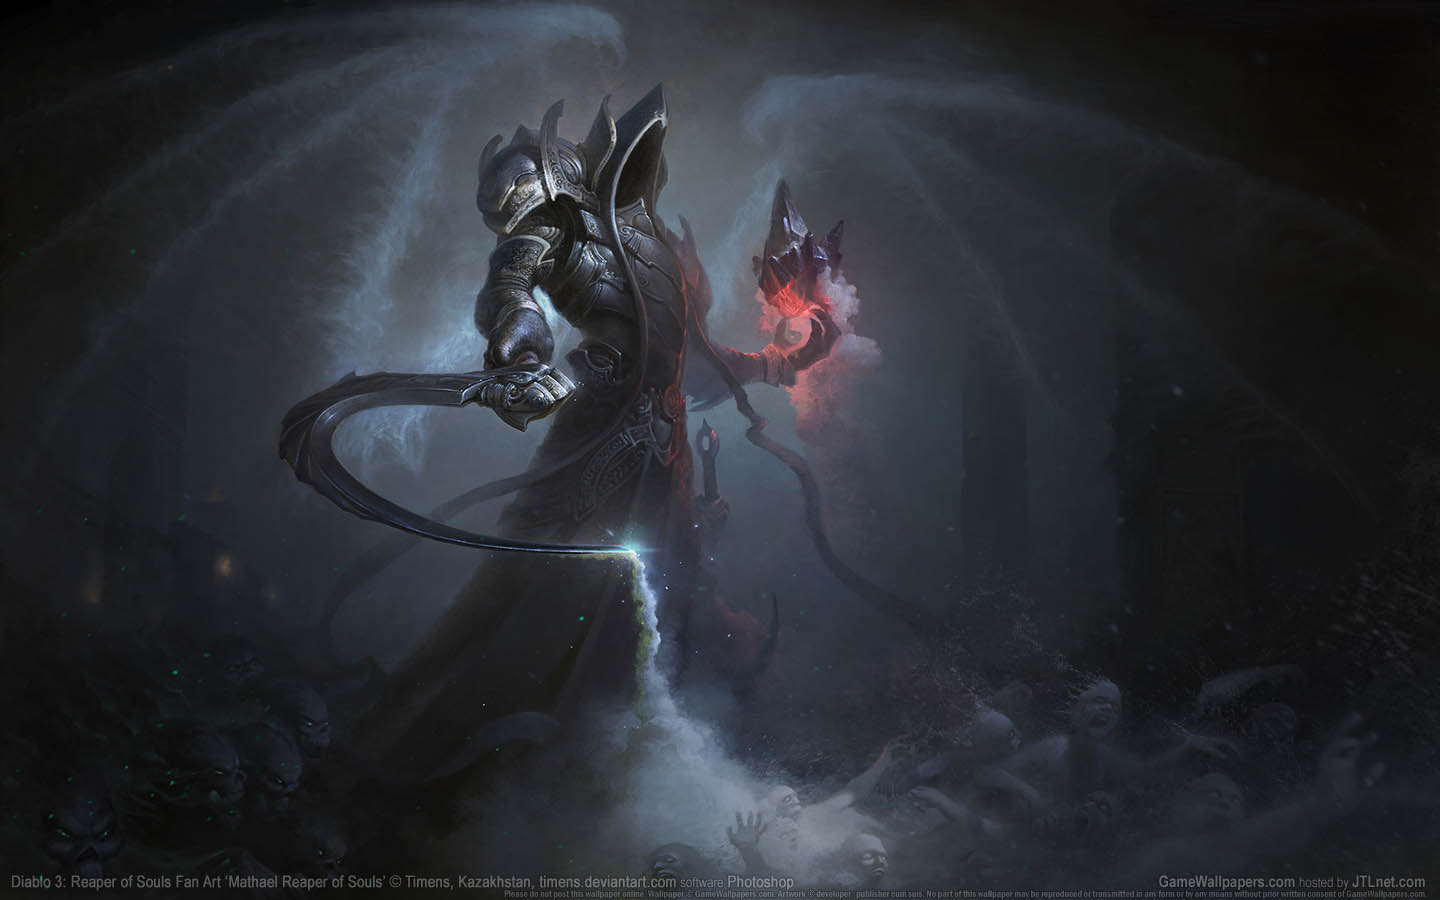 Diablo 3: Reaper of Souls Fan Art fond d'cran 11 1440x900